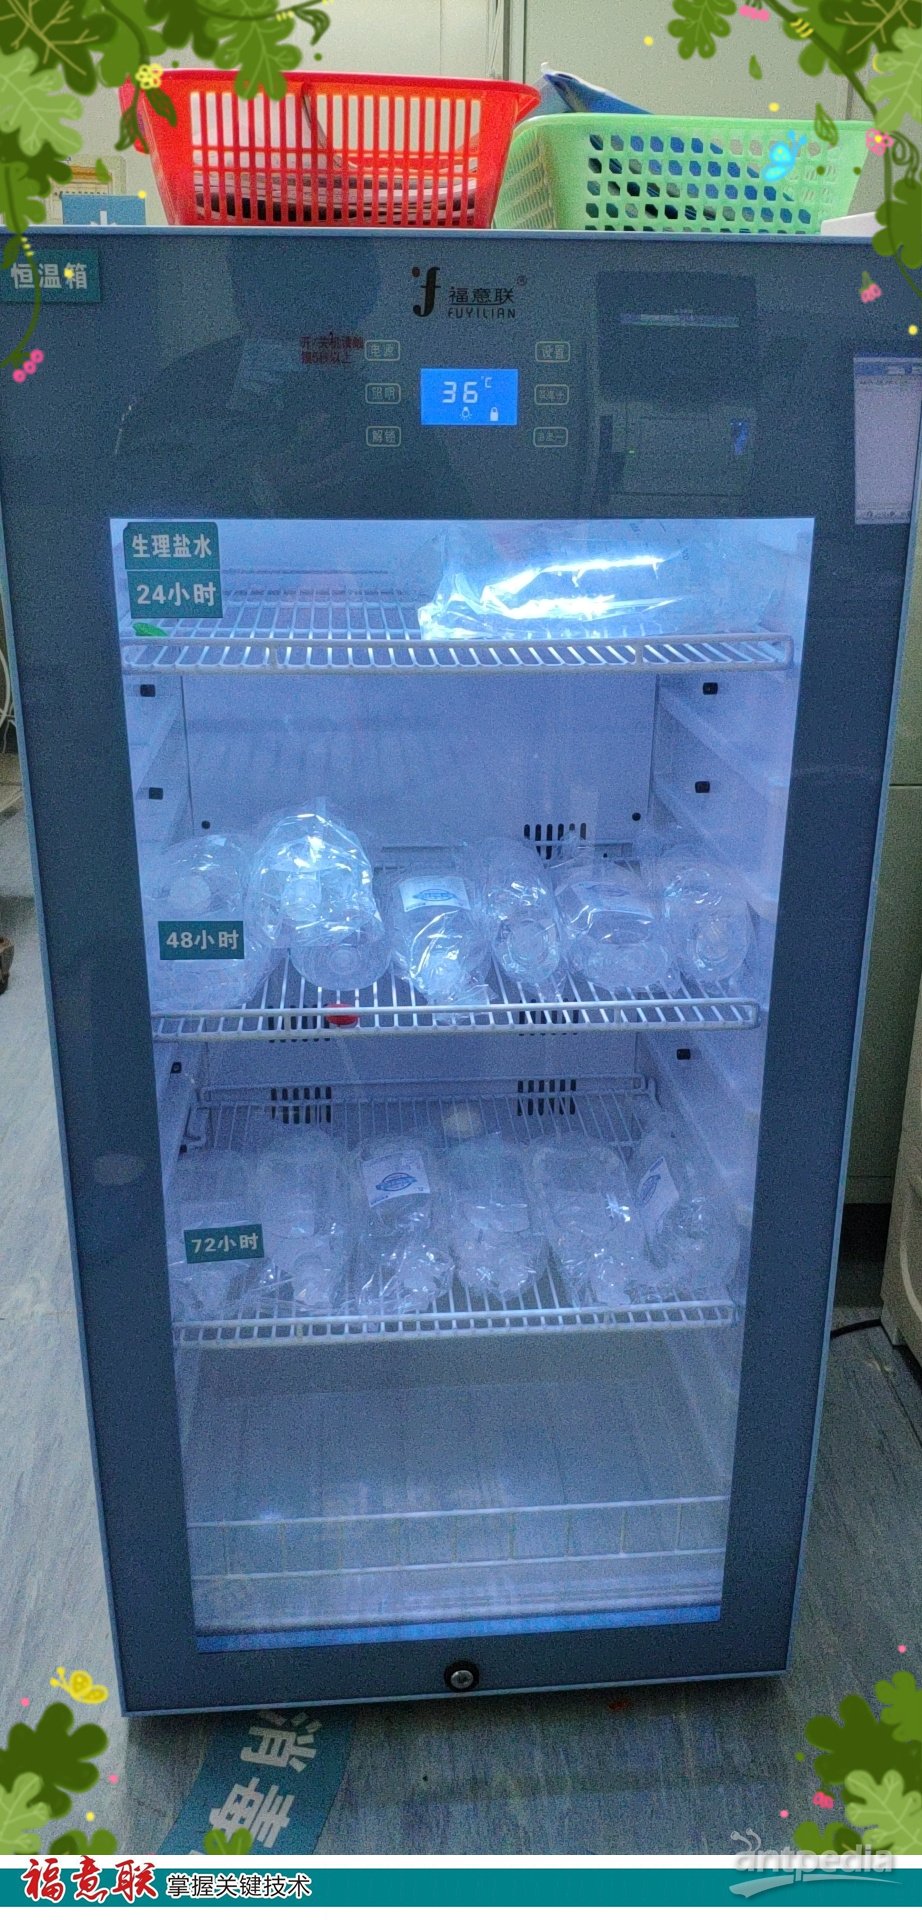 剂型:注射液冷藏柜FYL-YS-1028L